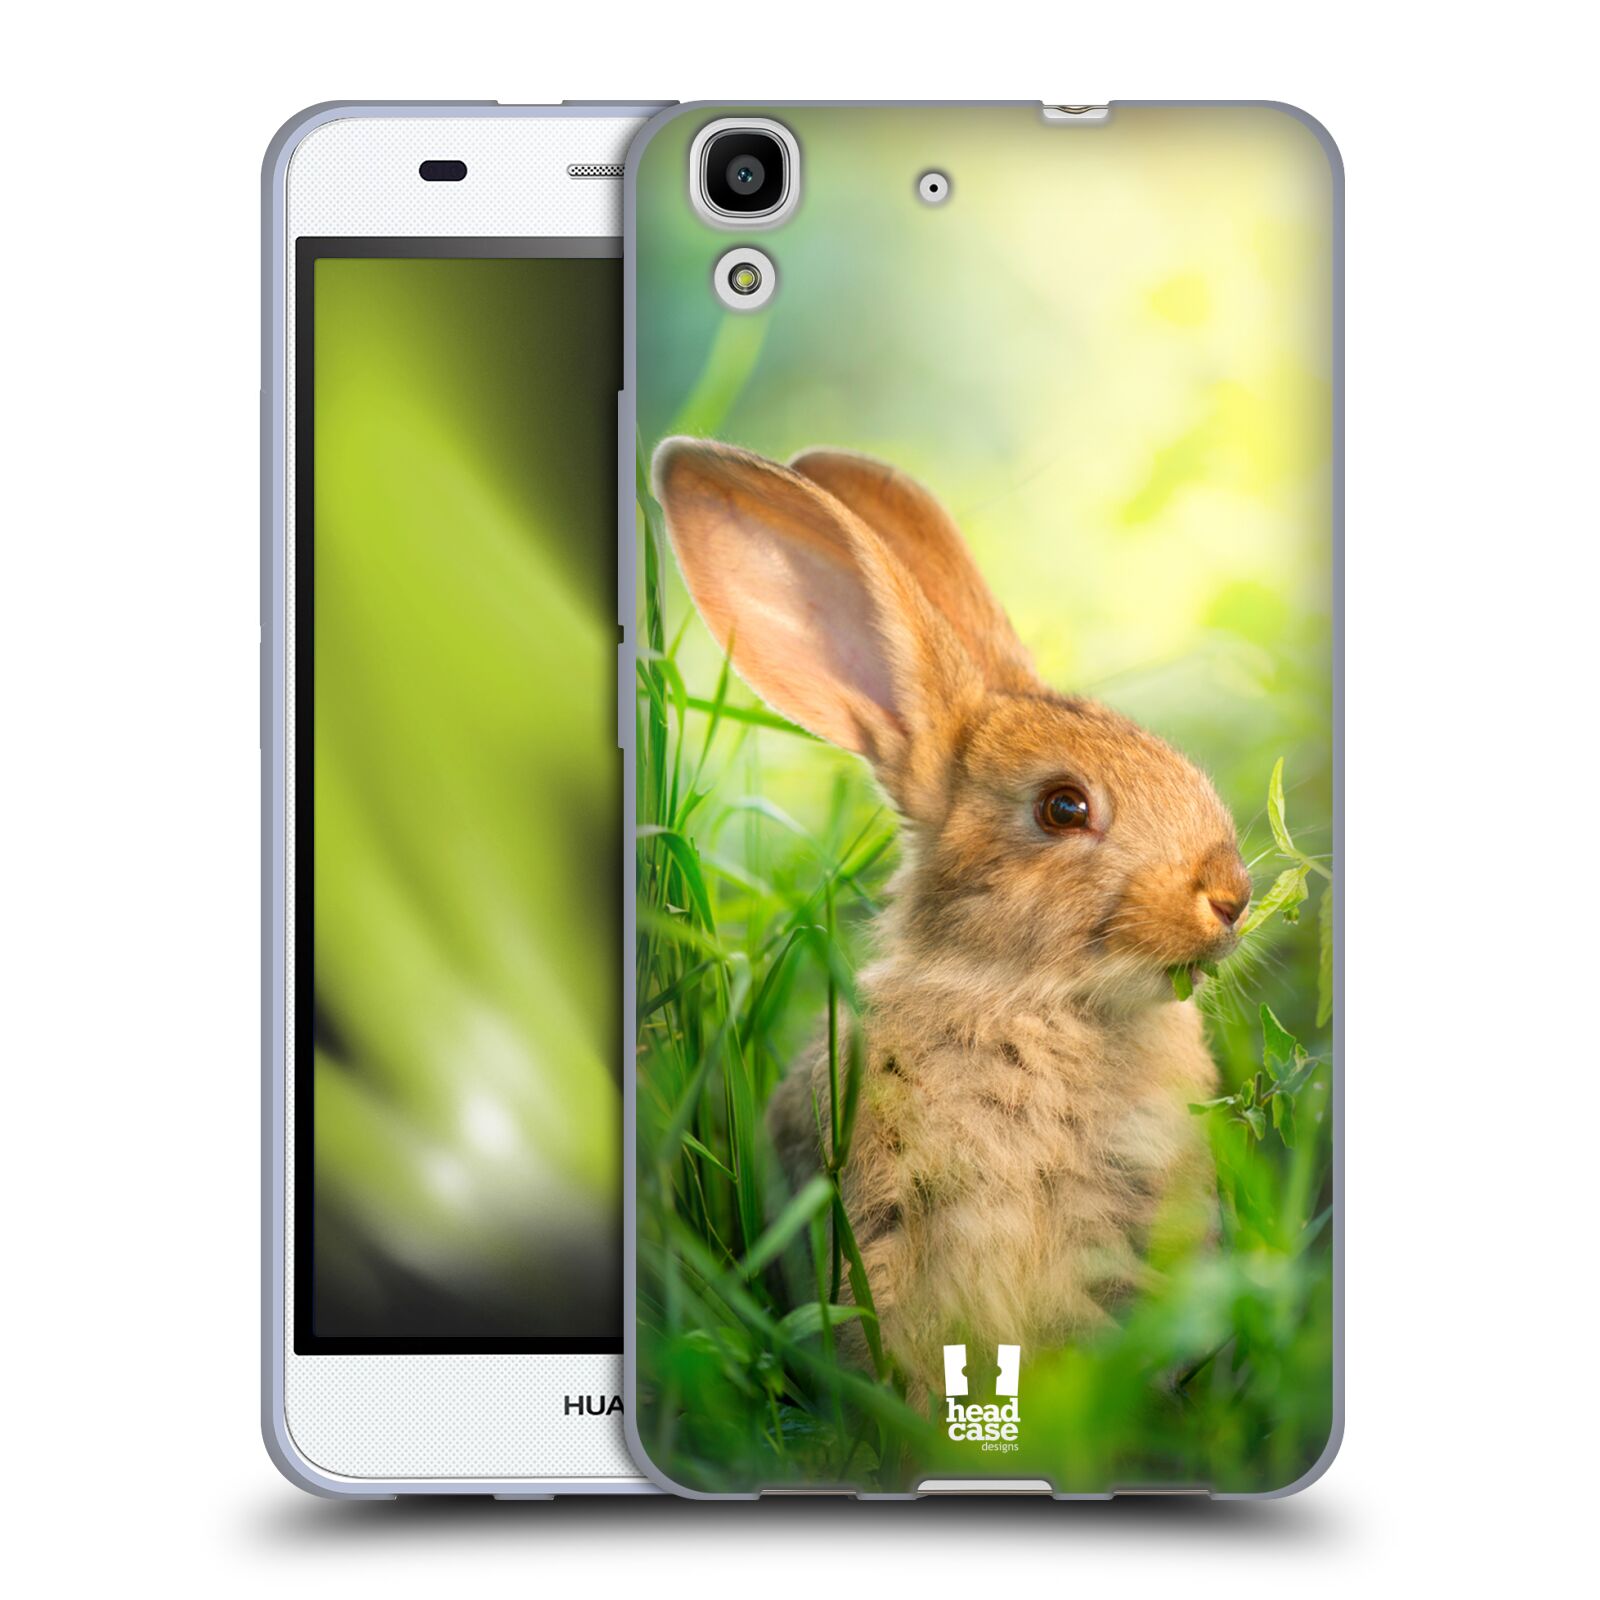 HEAD CASE silikonový obal na mobil HUAWEI Y6 vzor Divočina, Divoký život a zvířata foto ZAJÍČEK V TRÁVĚ ZELENÁ